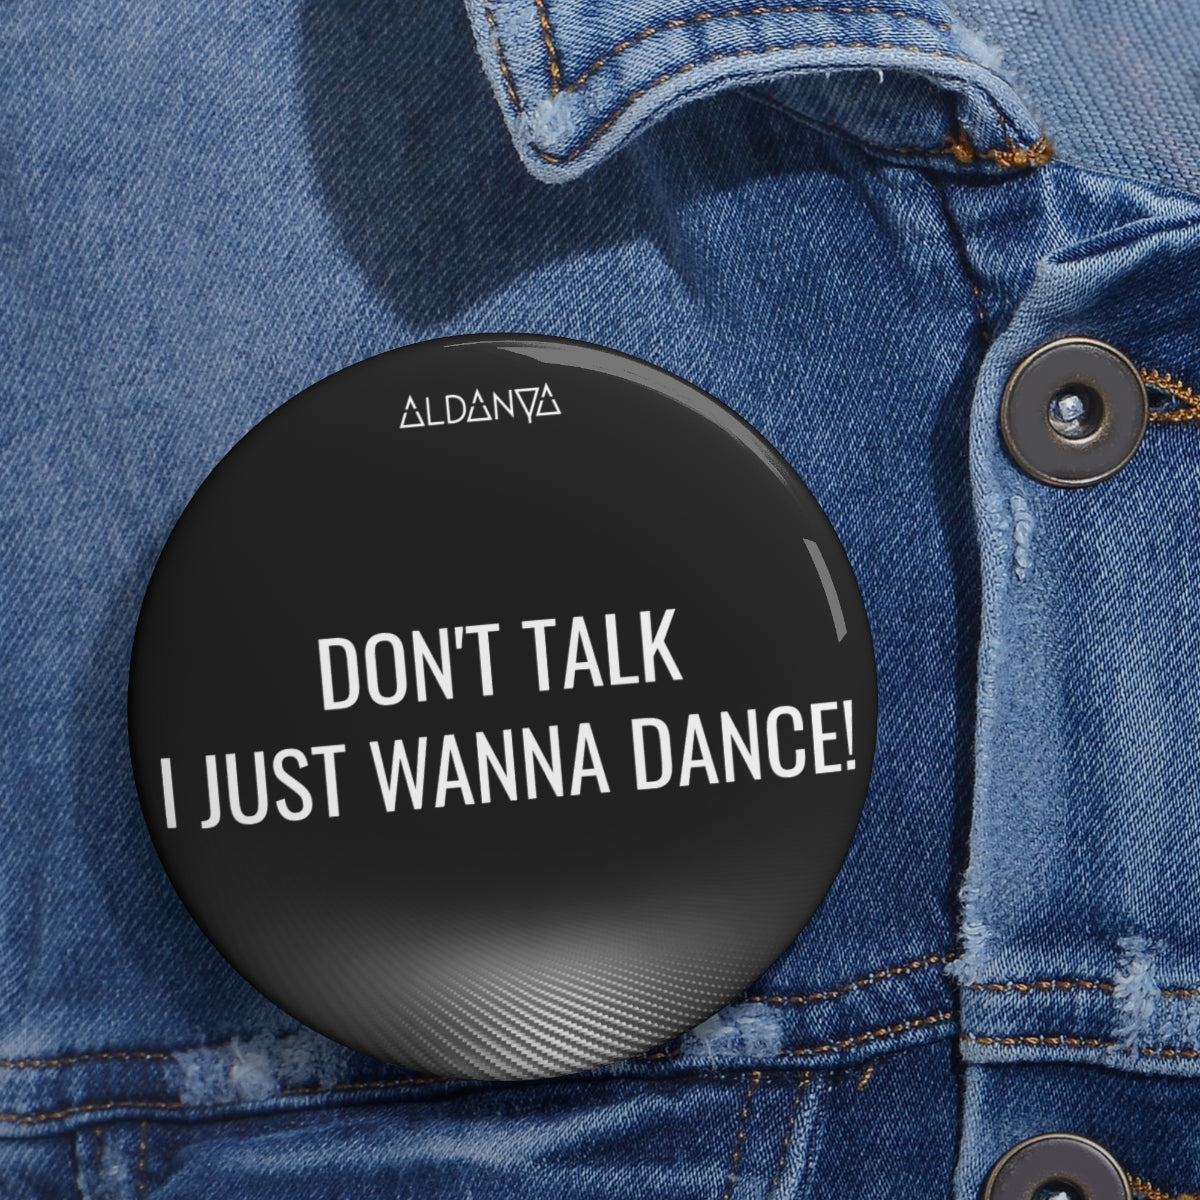 ALDANYA - "Don't talk I just wanna dance" - Custom Pin Buttons